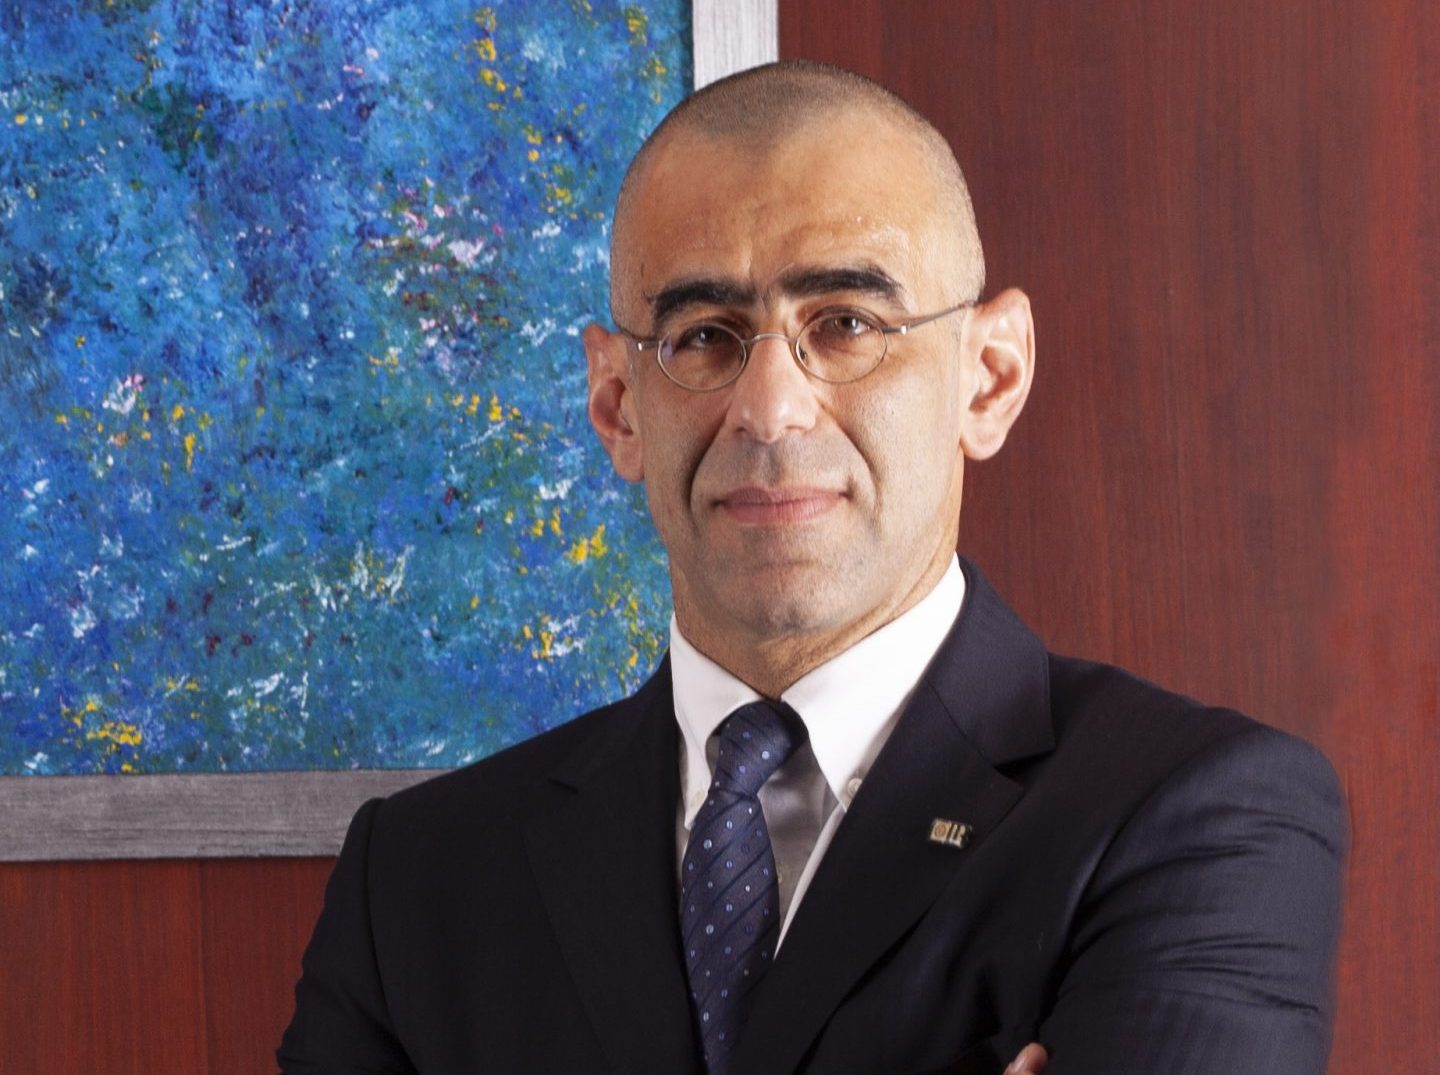 حسين أباظة، الرئيس التنفيذي وعضو مجلس الإدارة بالبنك